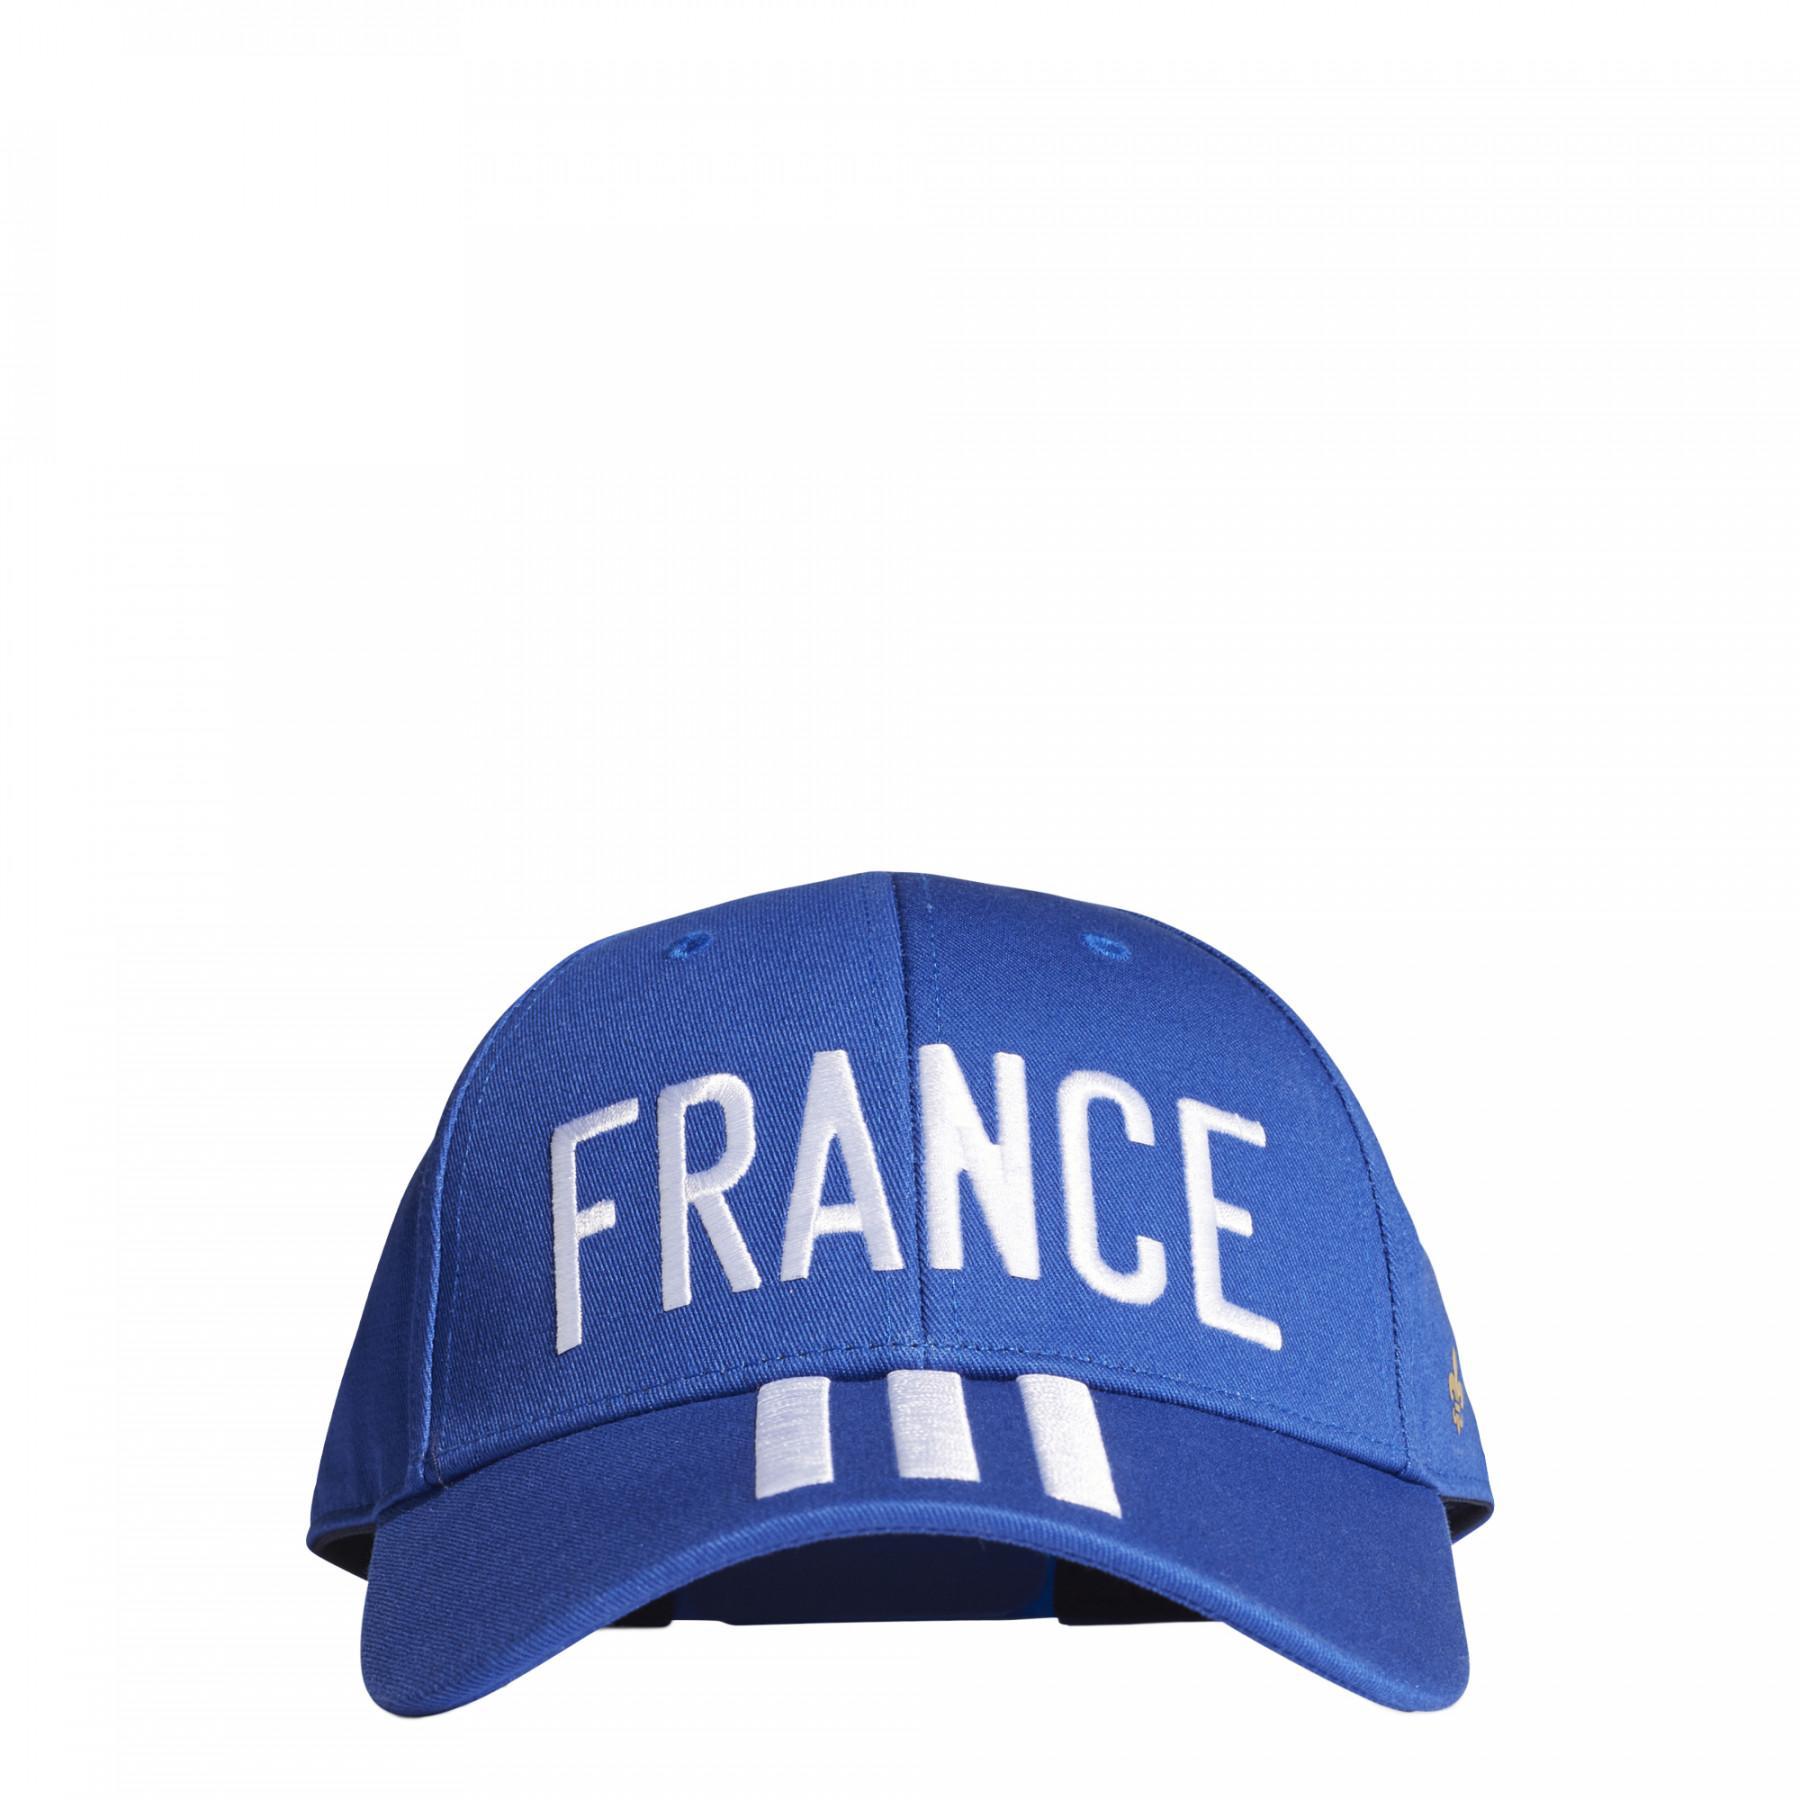 Baseballpet France Fan Euro 2020